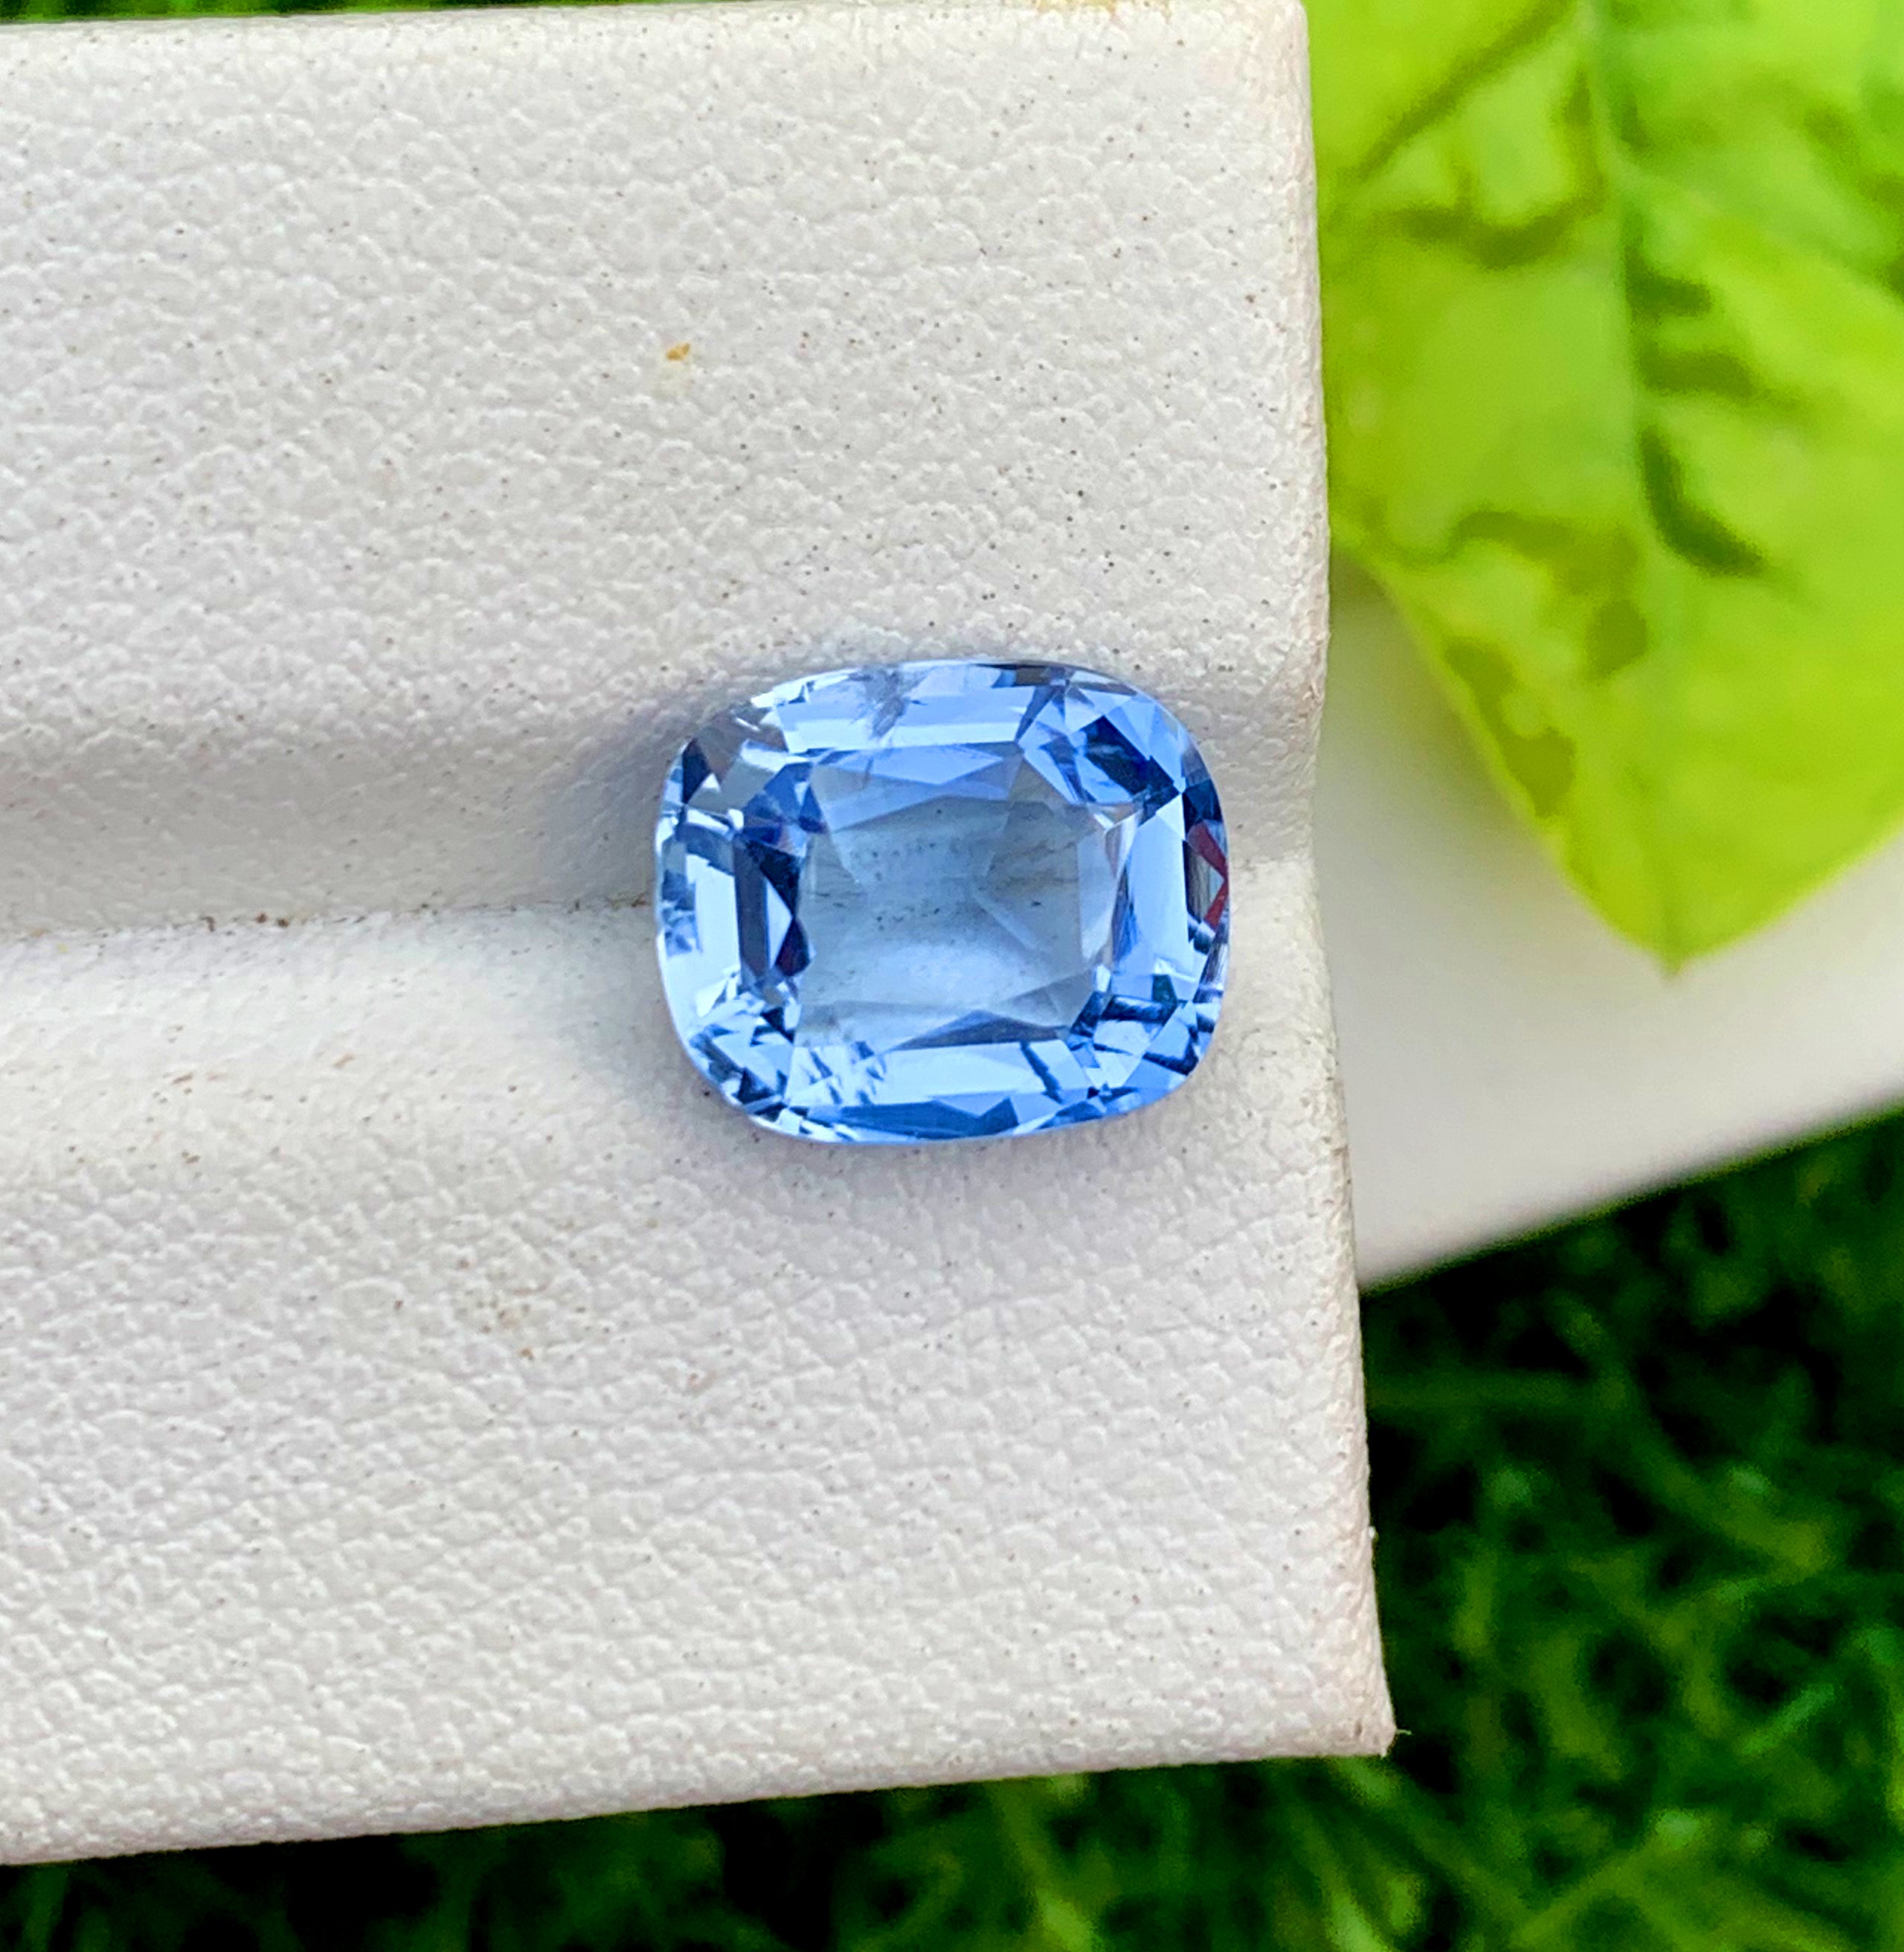 Santa Maria Blue Color Aquamarine Gemstone, Loose Gemstone, Aquamarine Faceted Cut Stone, Gemstone Jewelry - 3.20 CT